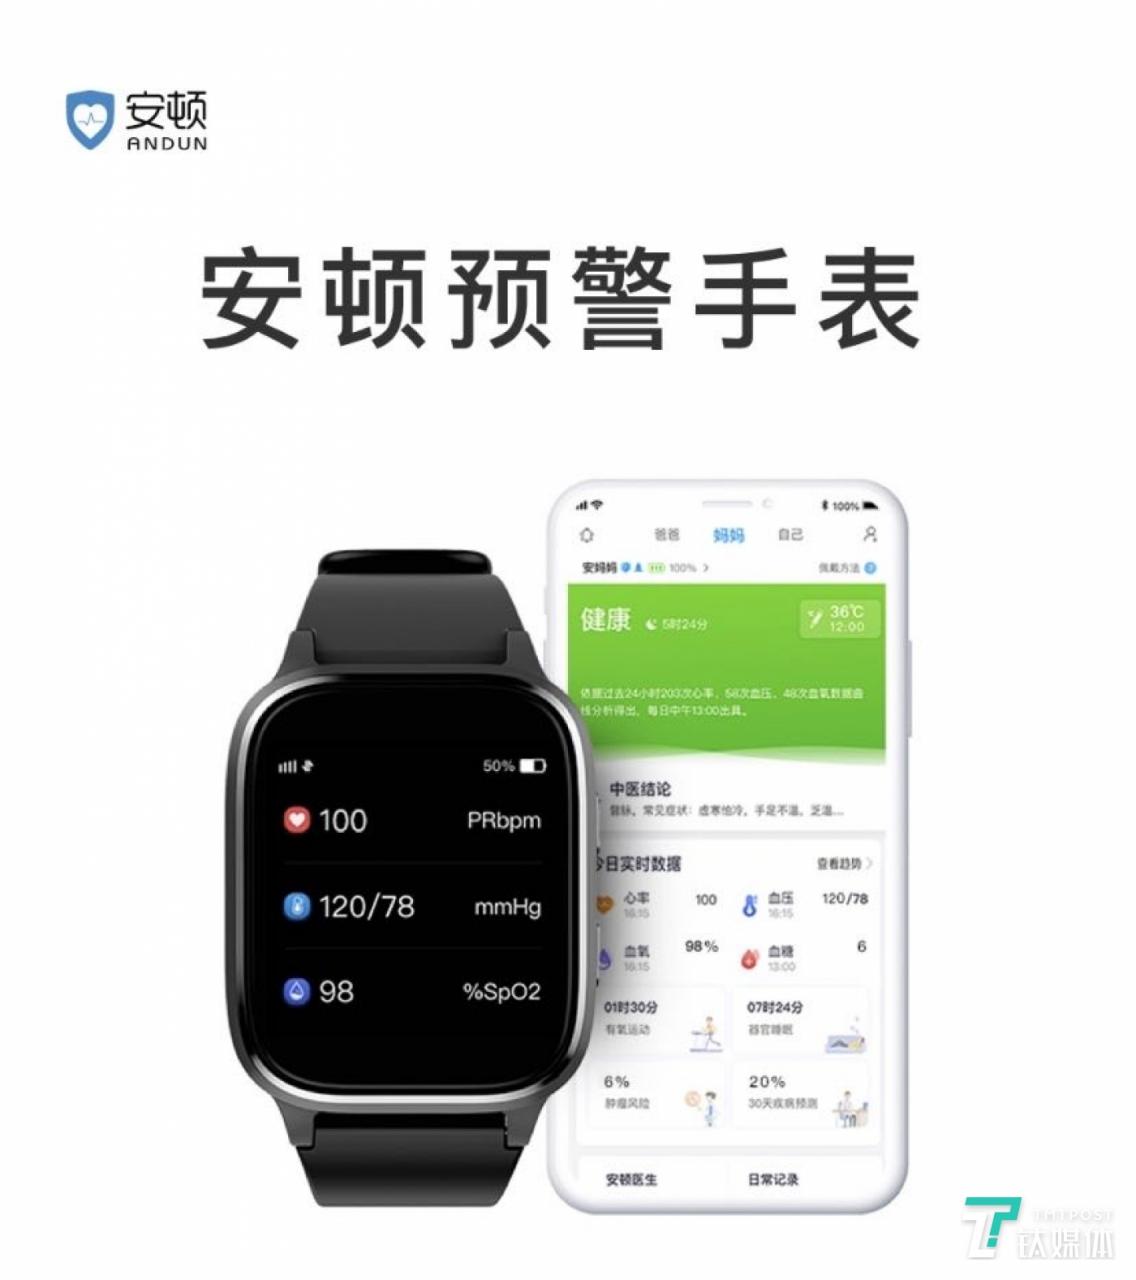 安顿预警手表产品与 App 界面